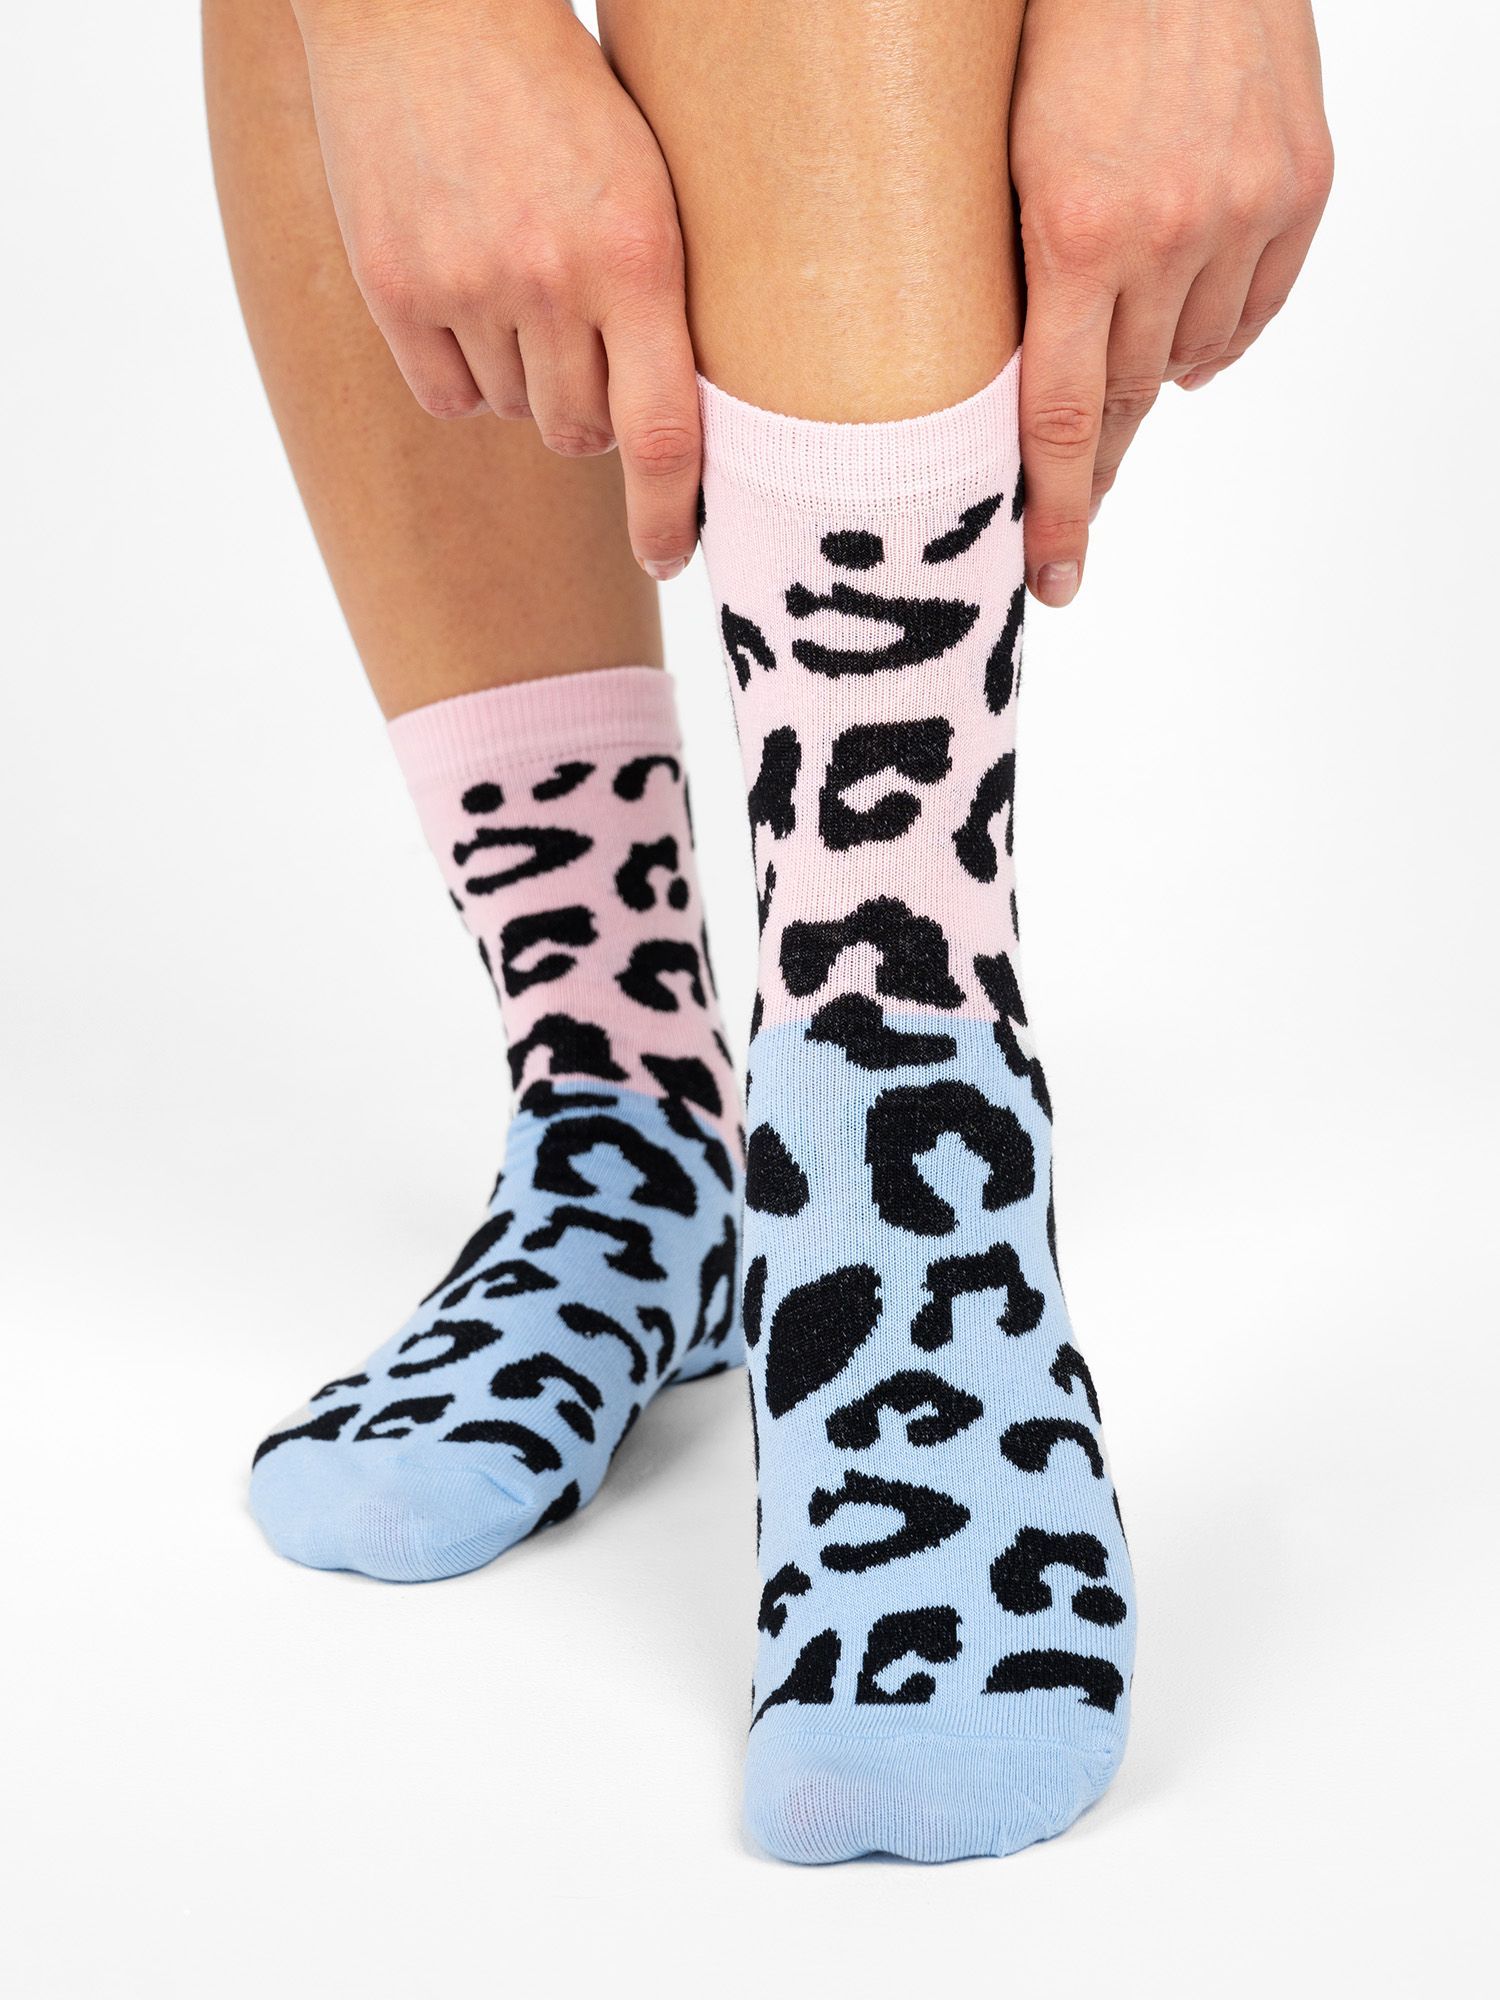 Купить носки в озоне. Носки с леопардовым принтом. Леопардовые носки женские. Носки леопардовой расцветки. Леопардовые носки с ботинками.